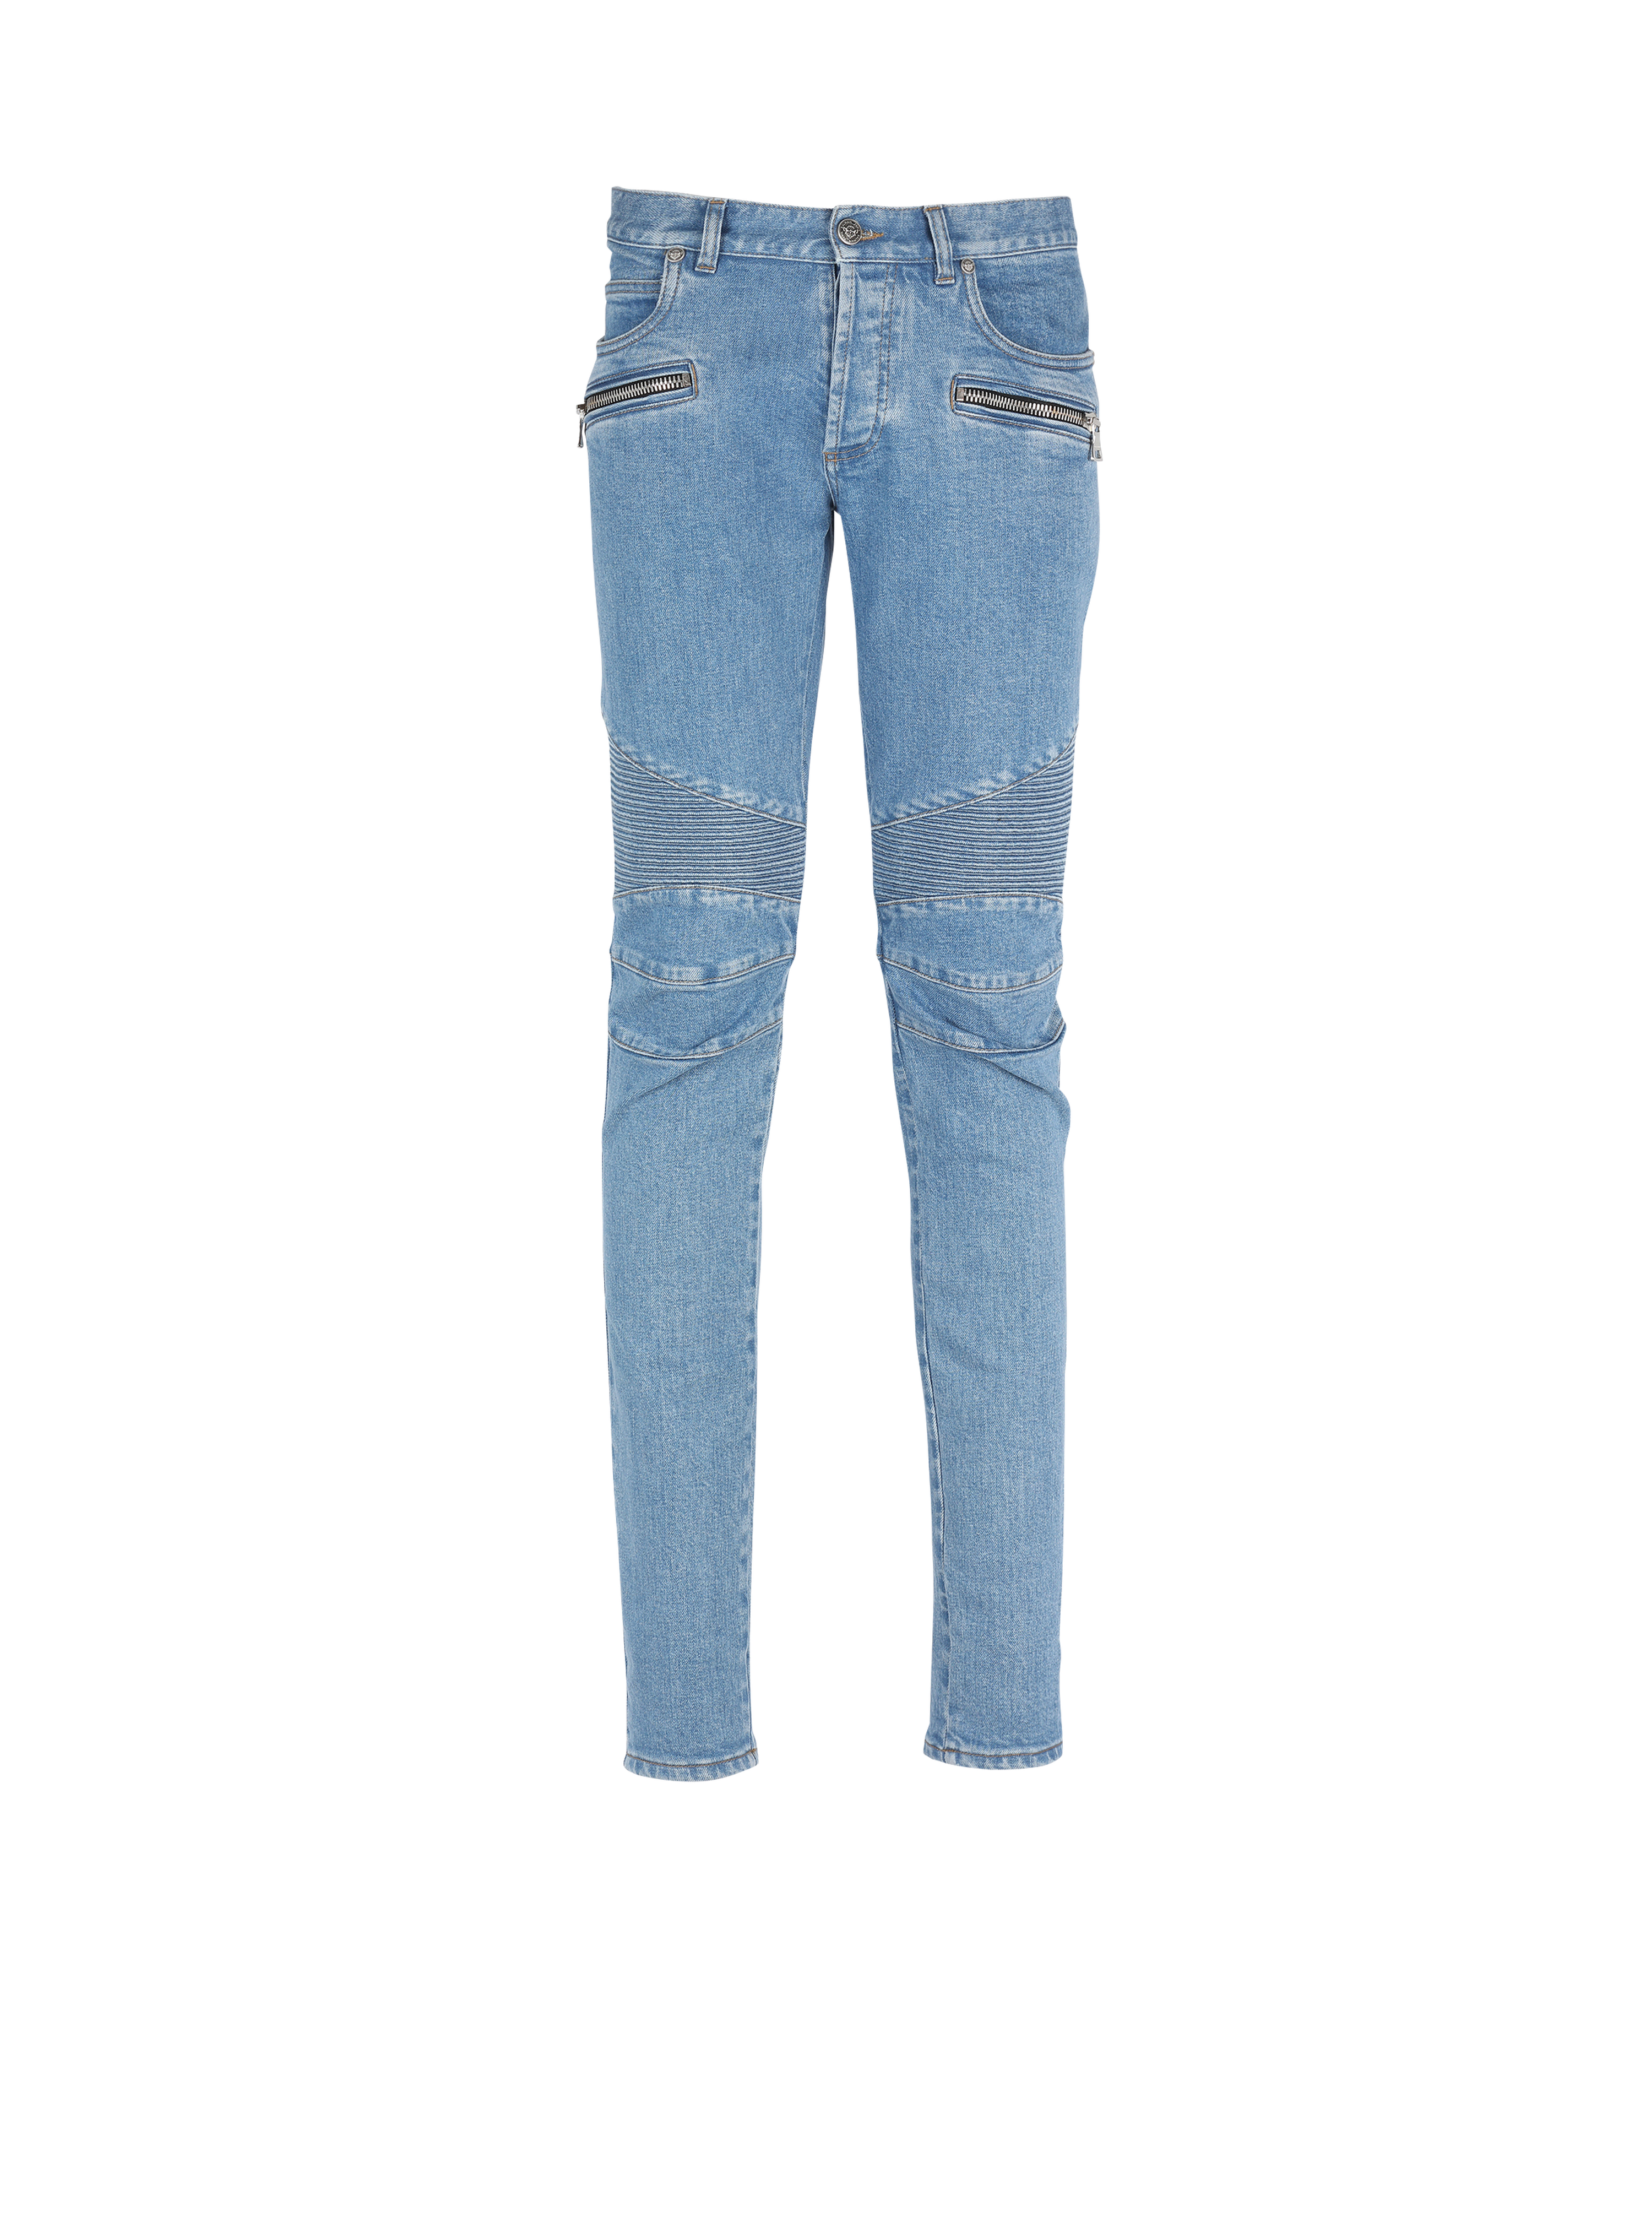 Schmal geschnittene Jeans aus Baumwolle mit geriffelten Details und Balmain-Monogramm am Saum, blau